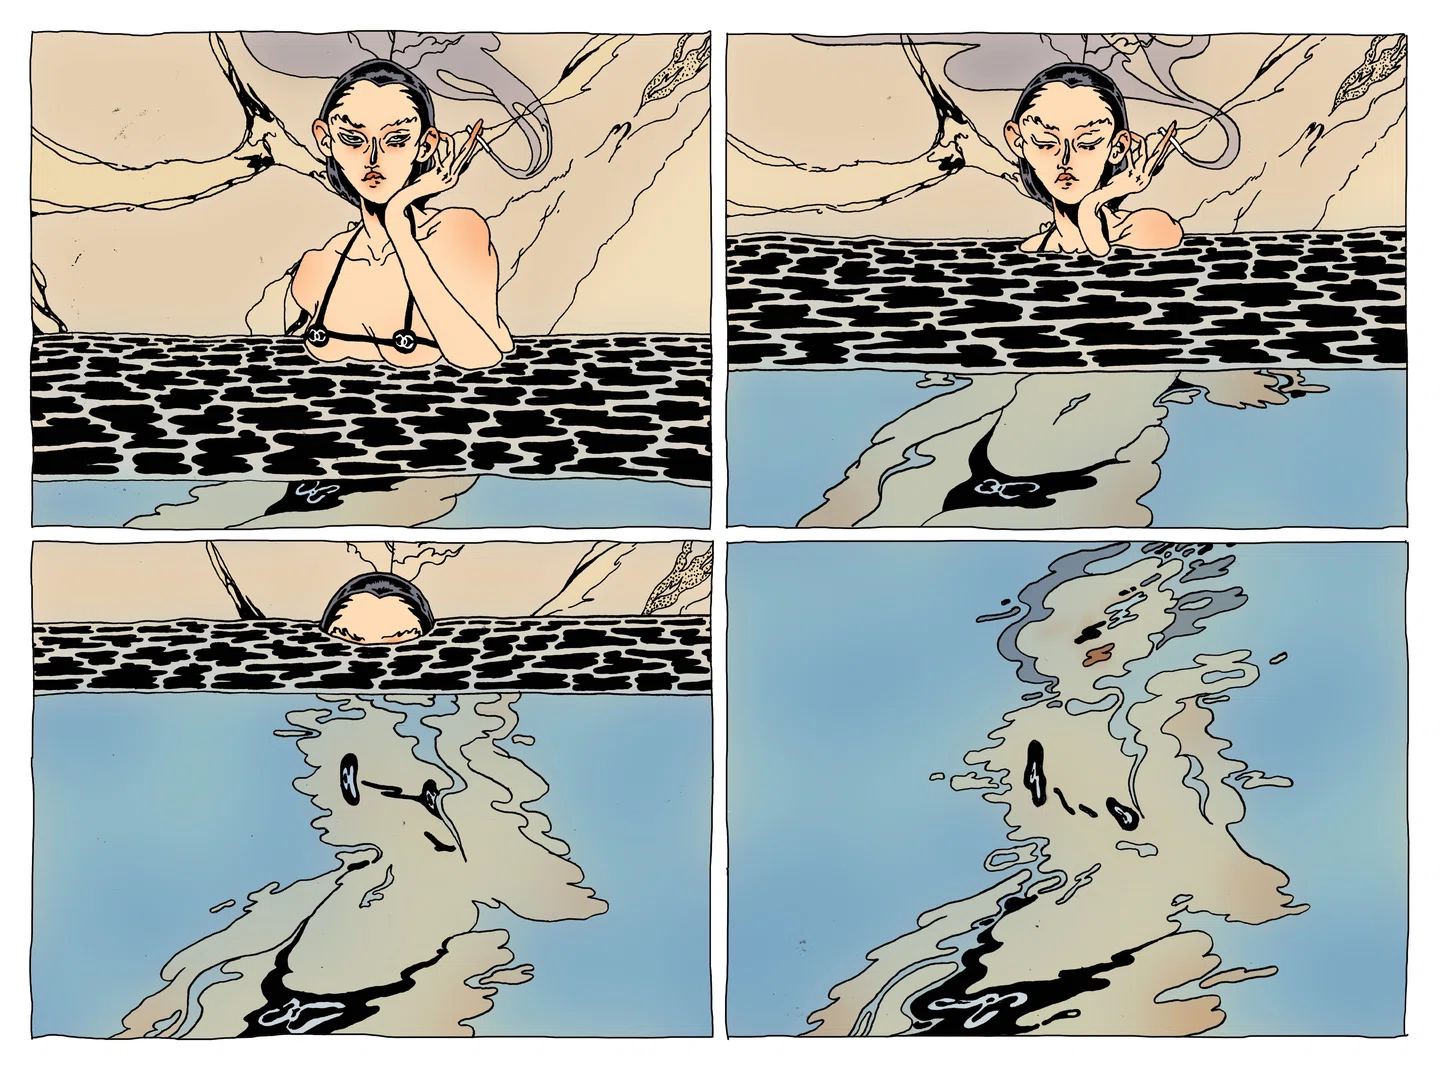 Роскошный, неряшливый и полный повествования: Иллюстрированный мир Элис Блумфилд продолжает расти